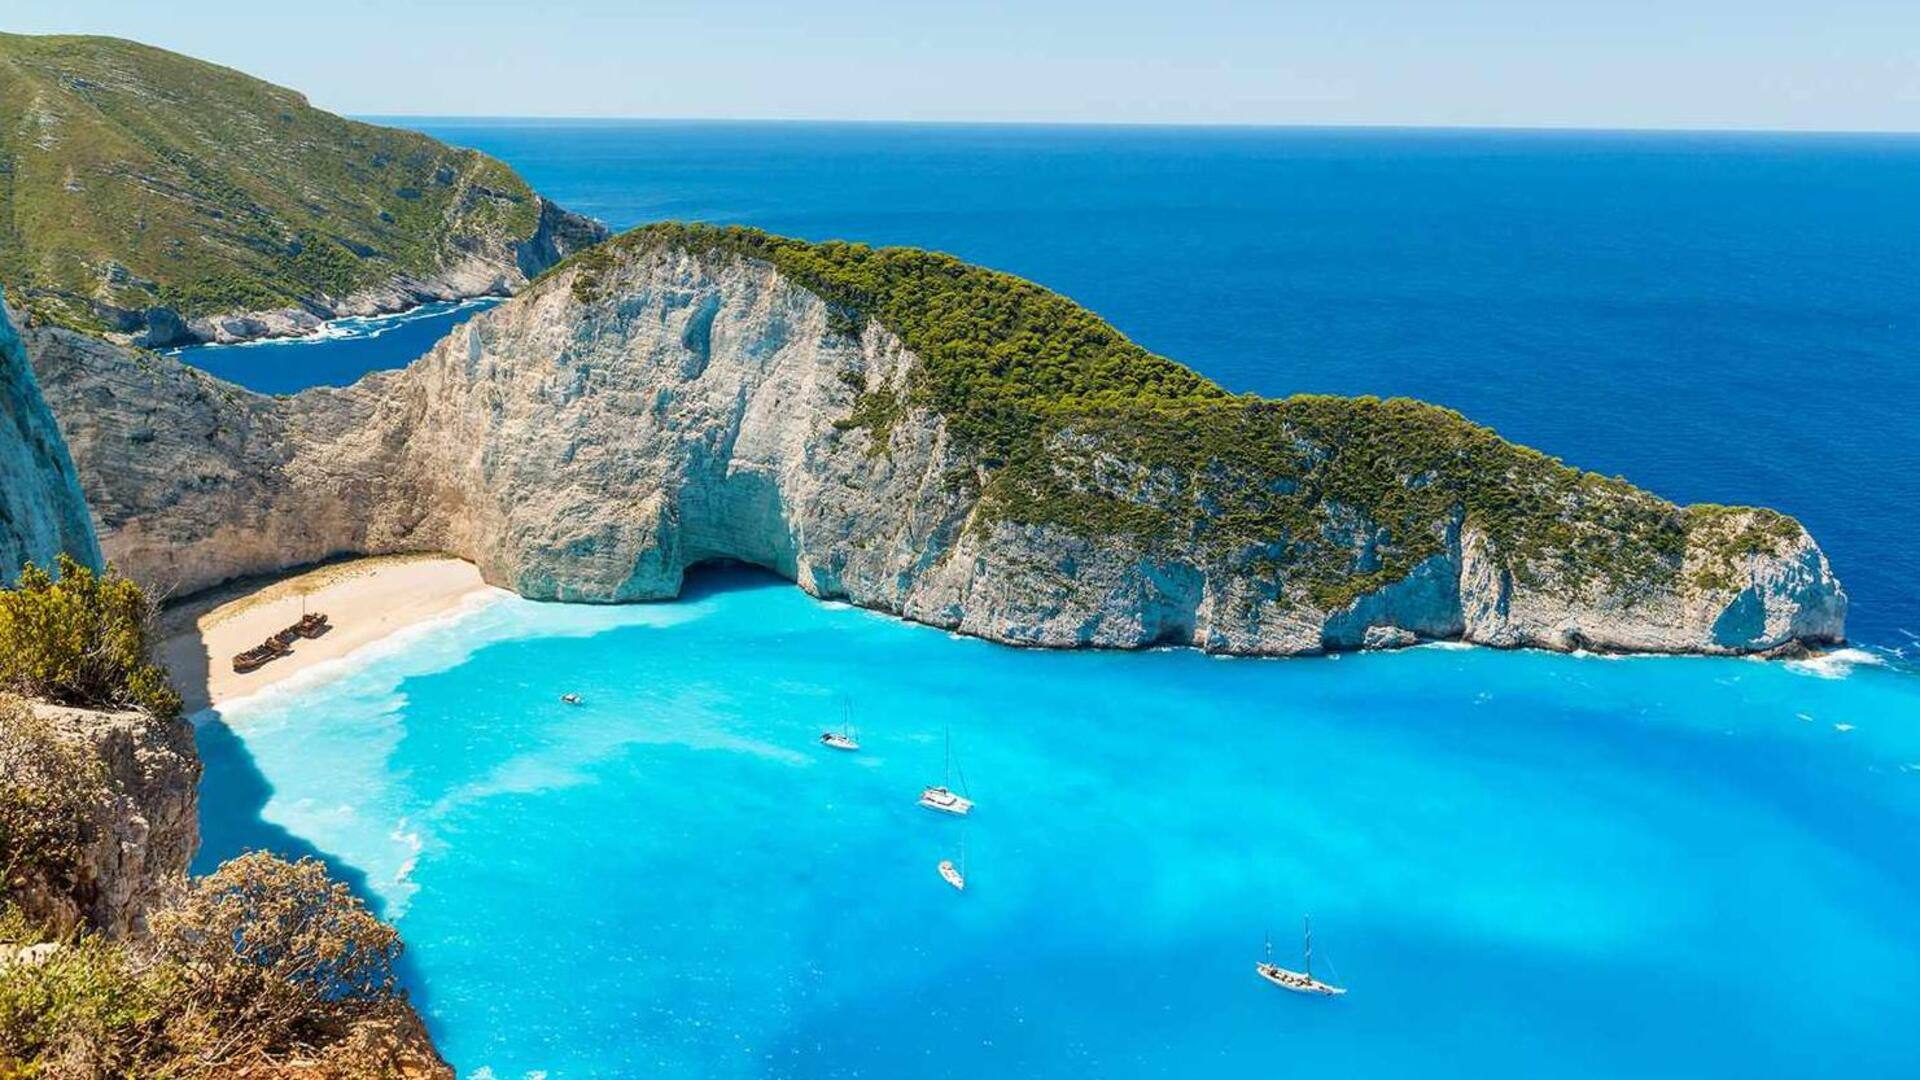 Discover Greece's hidden beach gems